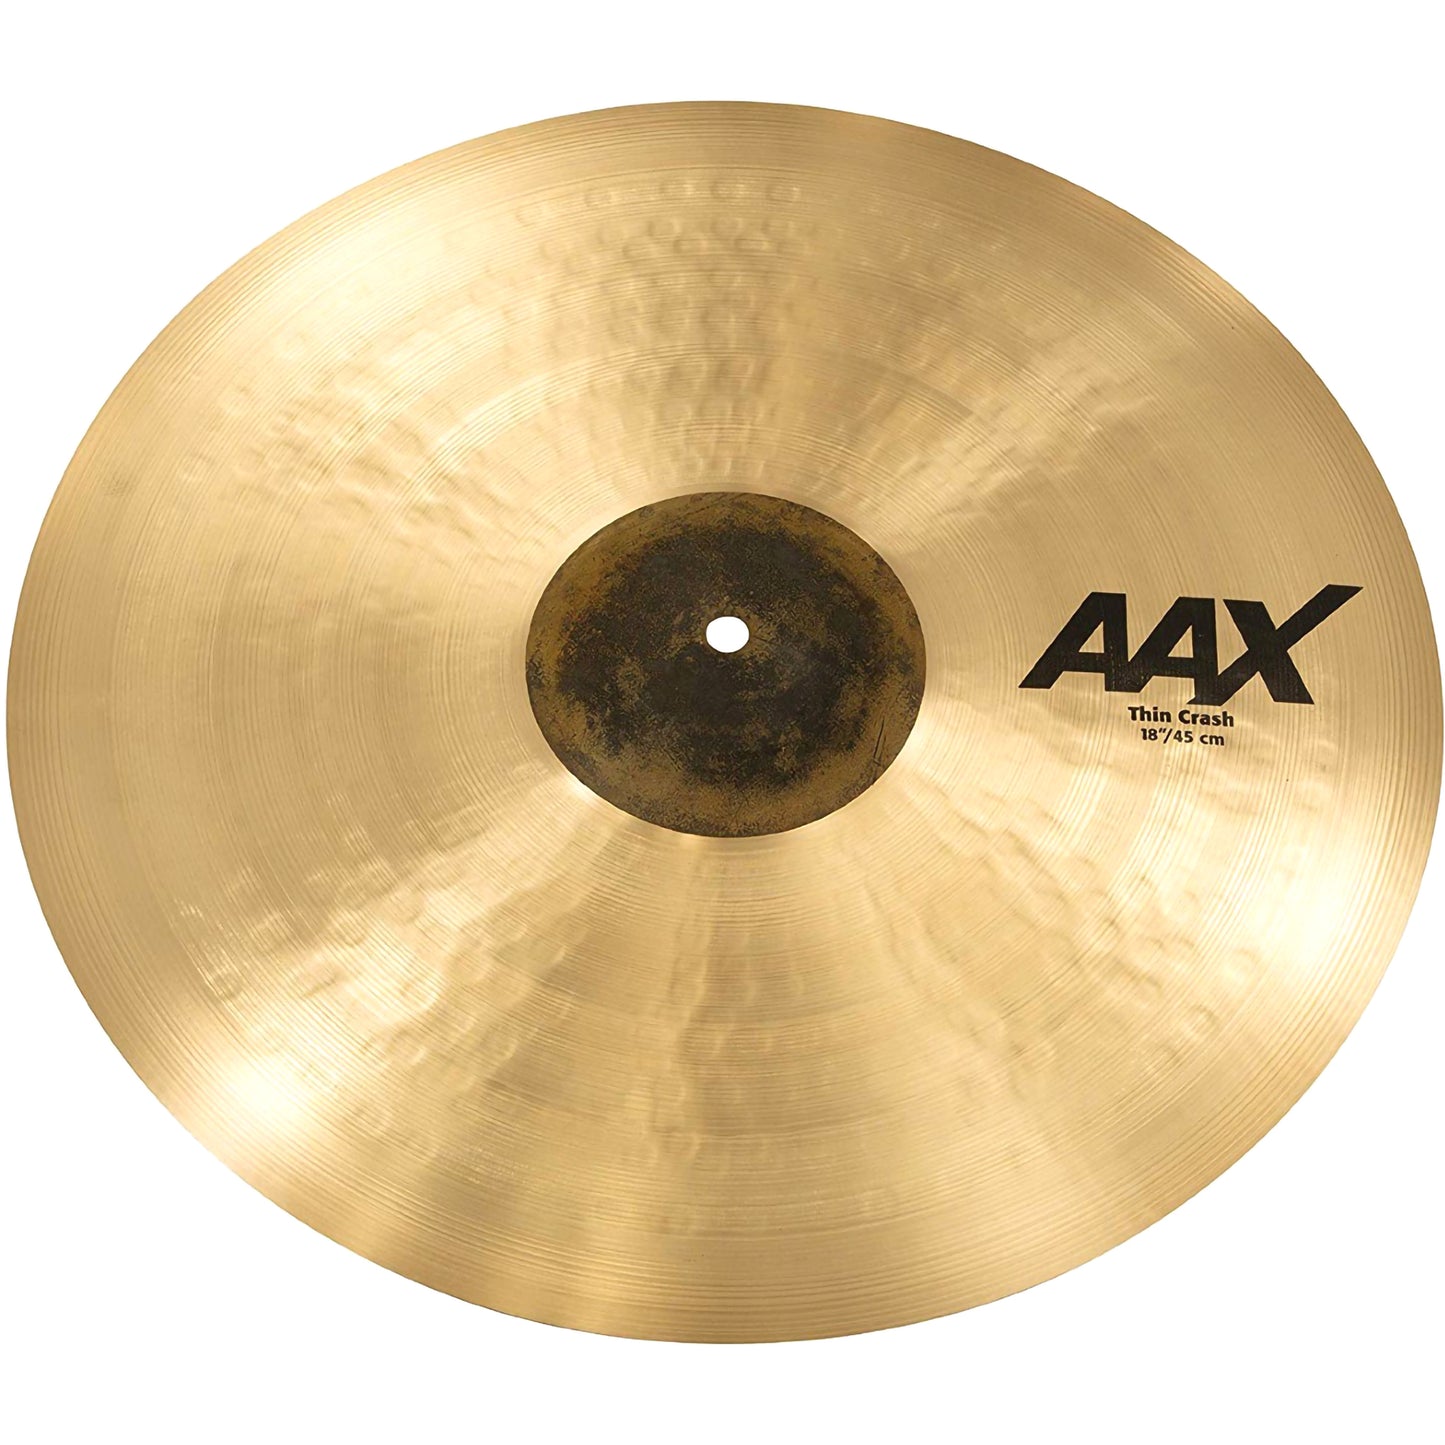 Sabian 18” AAX Thin Crash Cymbal